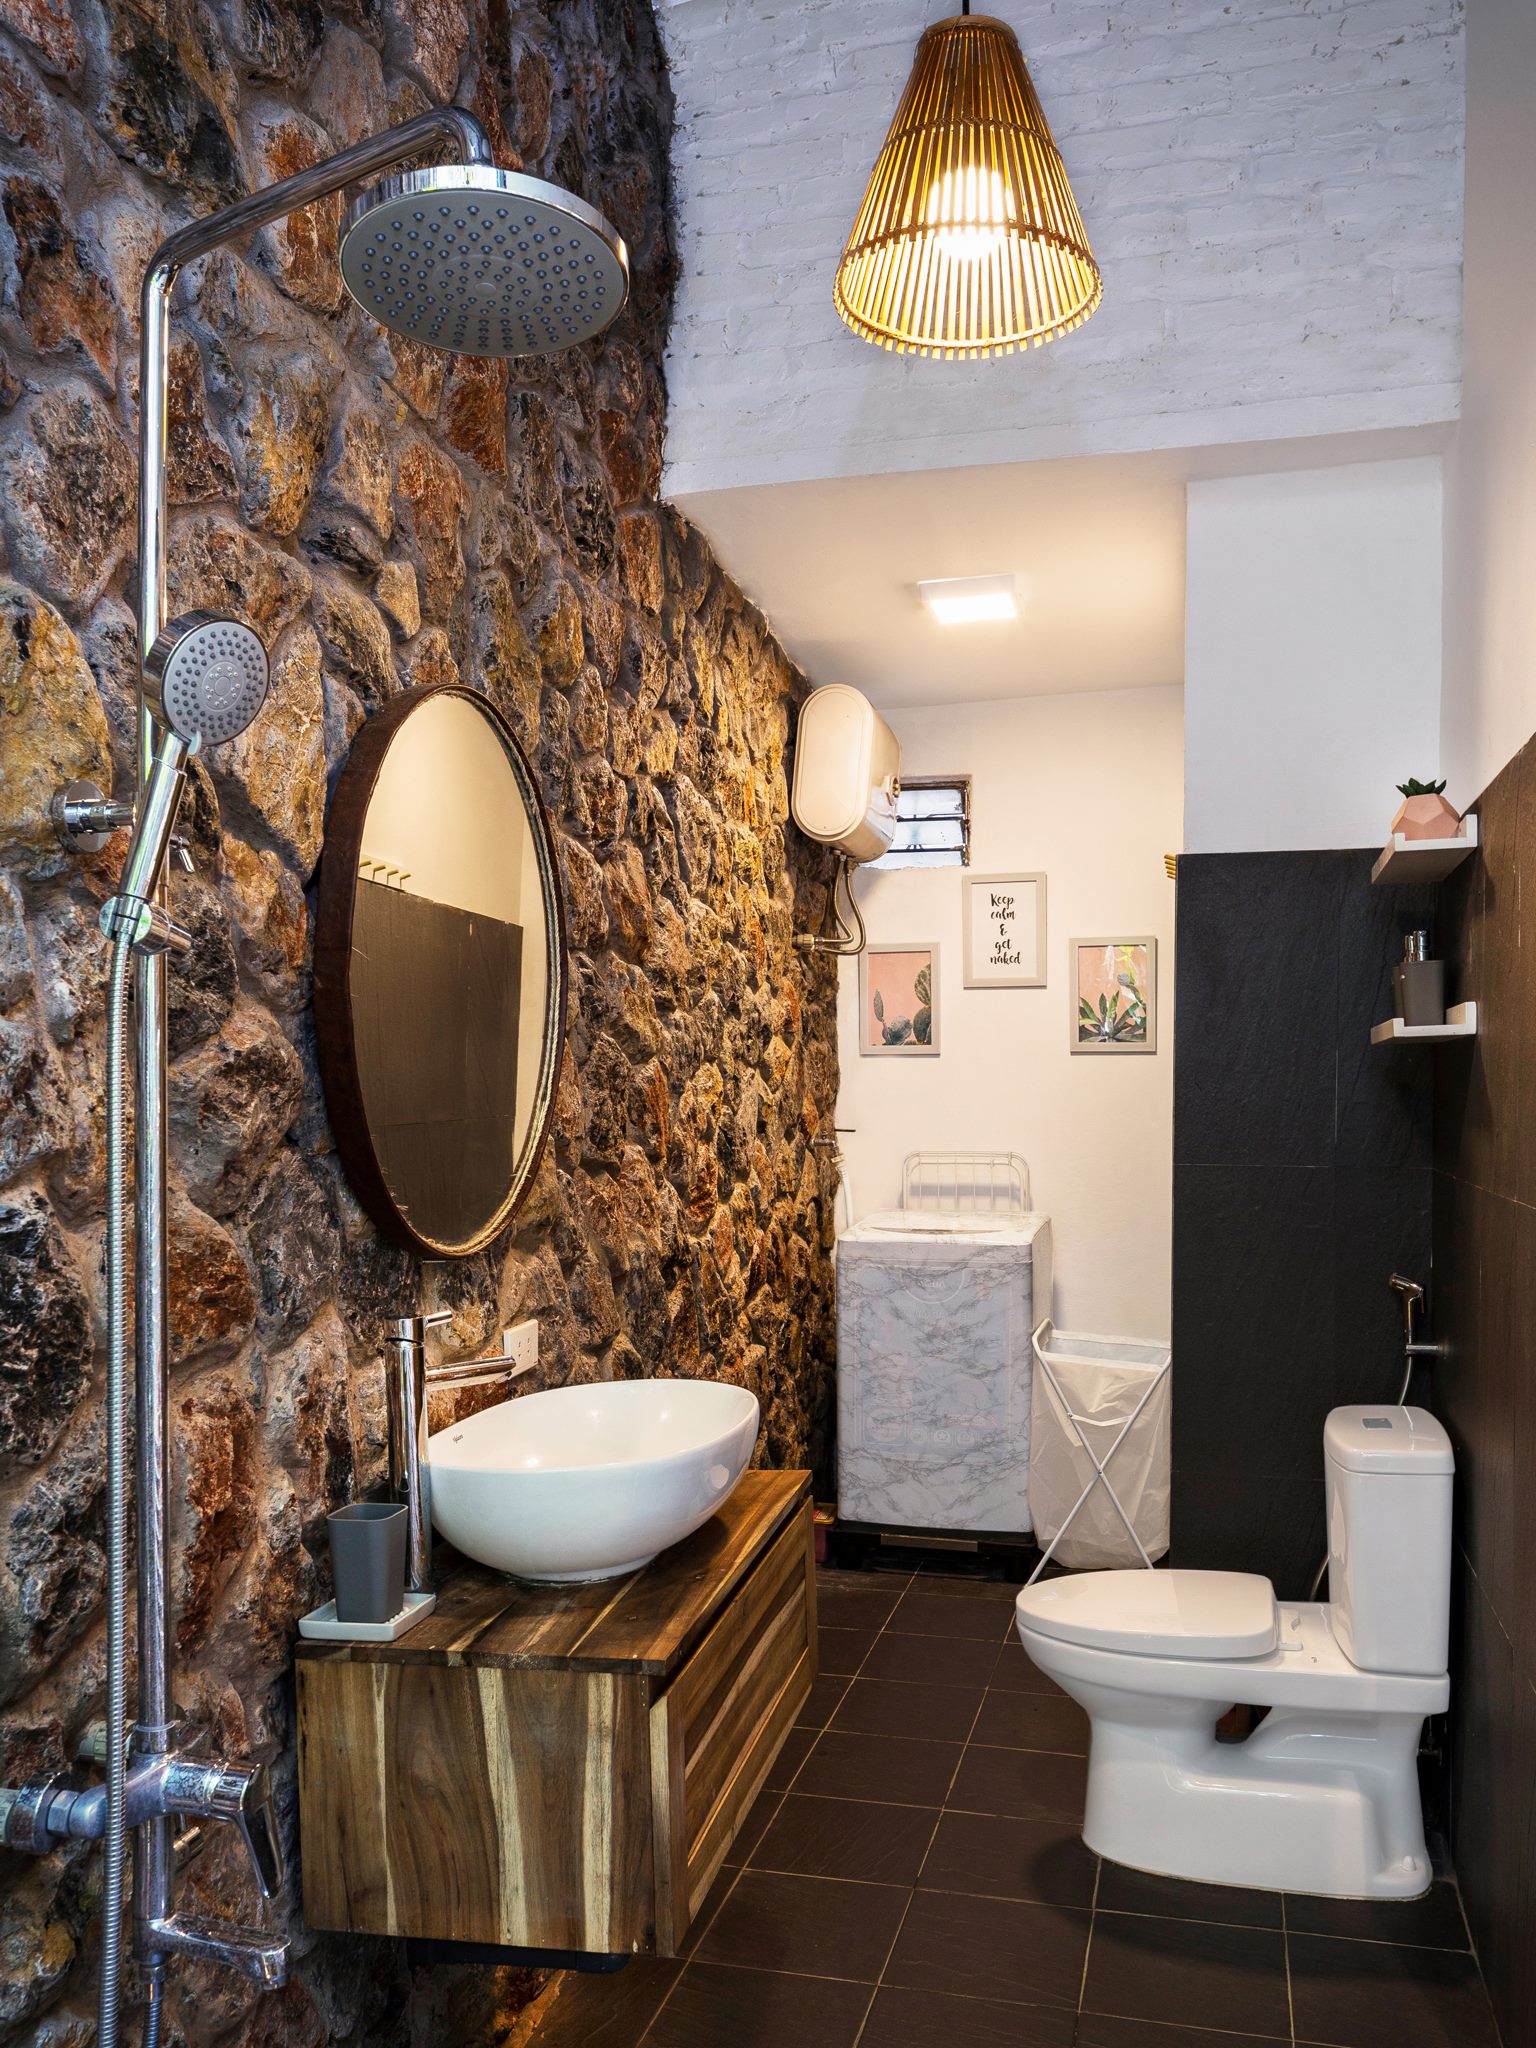 Nhà vệ sinh cũng mang phong cách độc đáo bởi đá núi và tone màu nâu - trắng.